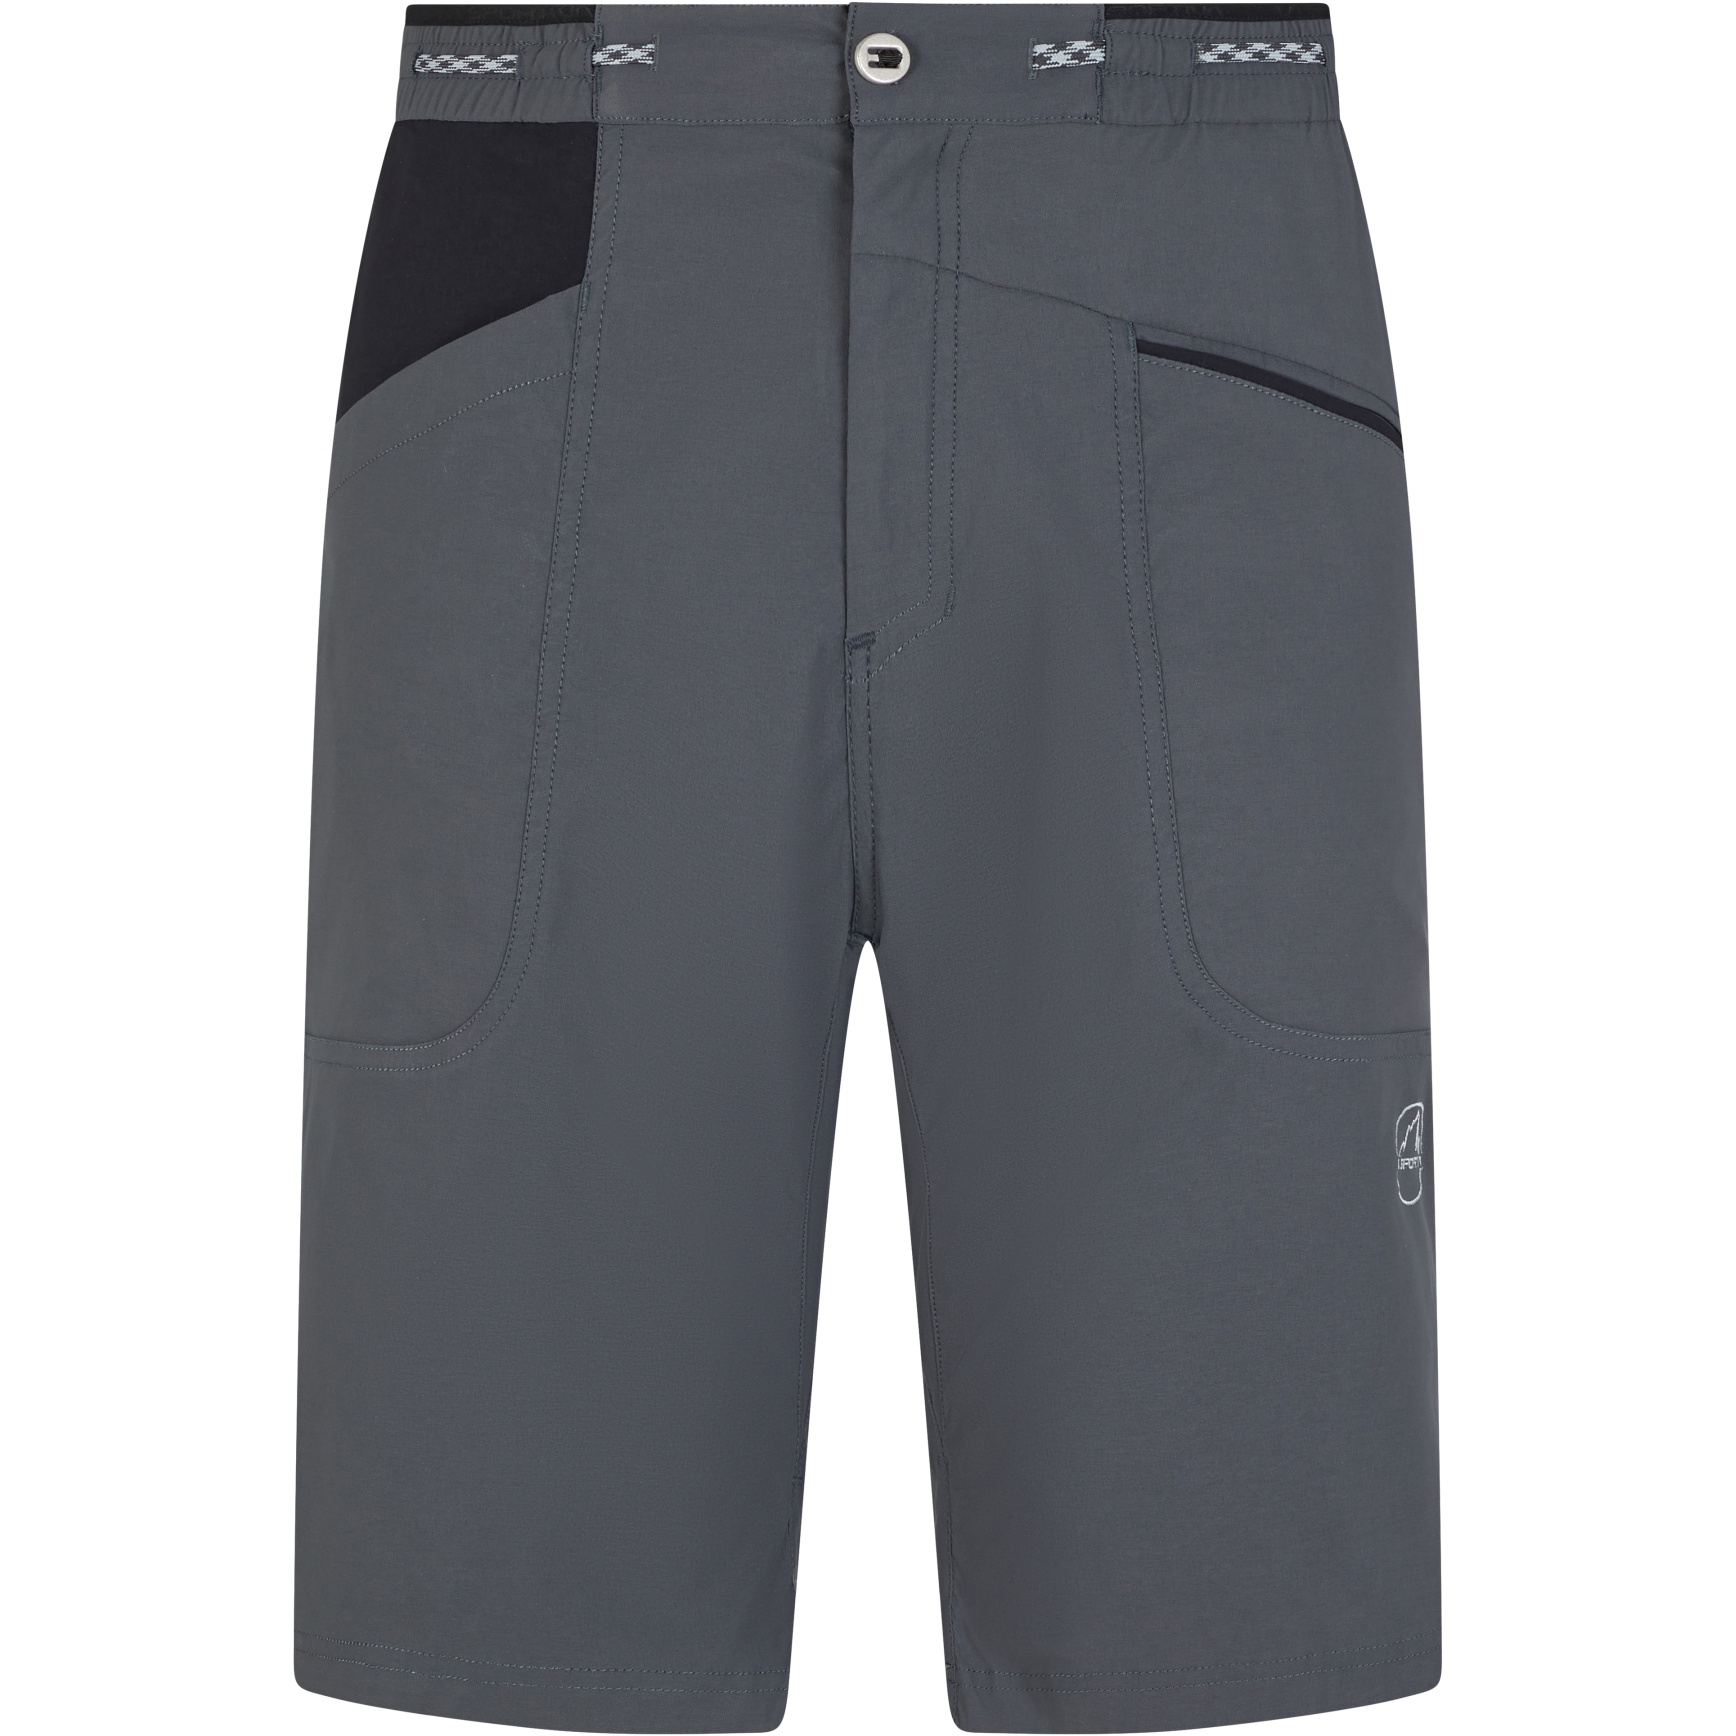 Produktbild von La Sportiva Belay Shorts - Carbon/Black